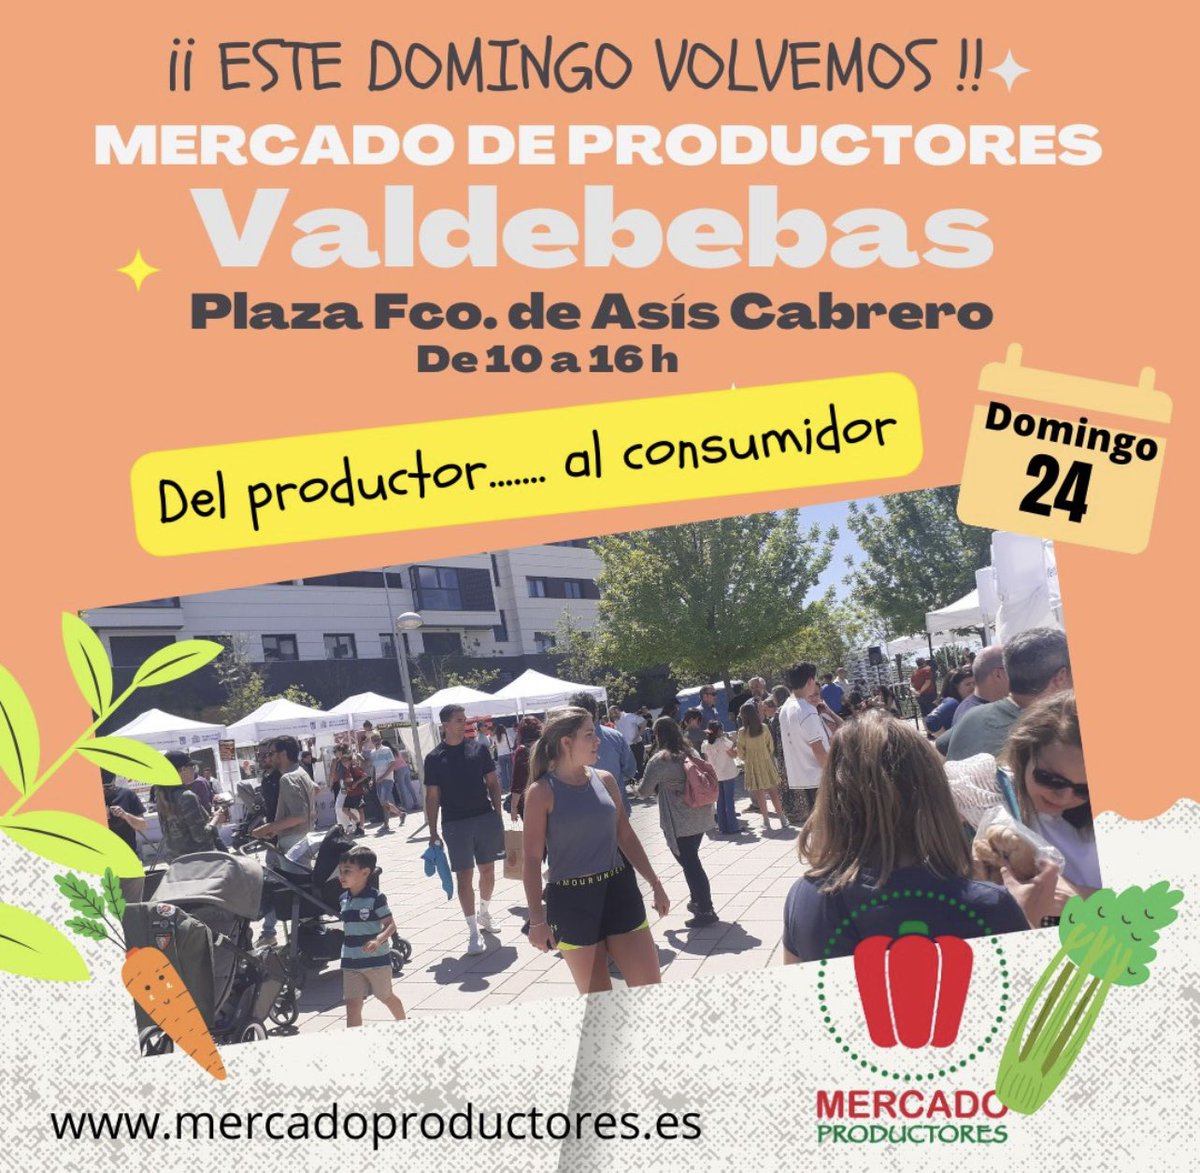 ¡Lo estamos deseando!
Este domingo los productores regresamos al Mercado de #Valdebebas
Además, zona de #tapeo, animaciones y música en vivo
Pza. Francisco de Asís Cabrero De 10 a 16 h
#mercadillo
#MercadoDeProductores #madrid
#productosnaturales #consumosostenible #madrid #km0